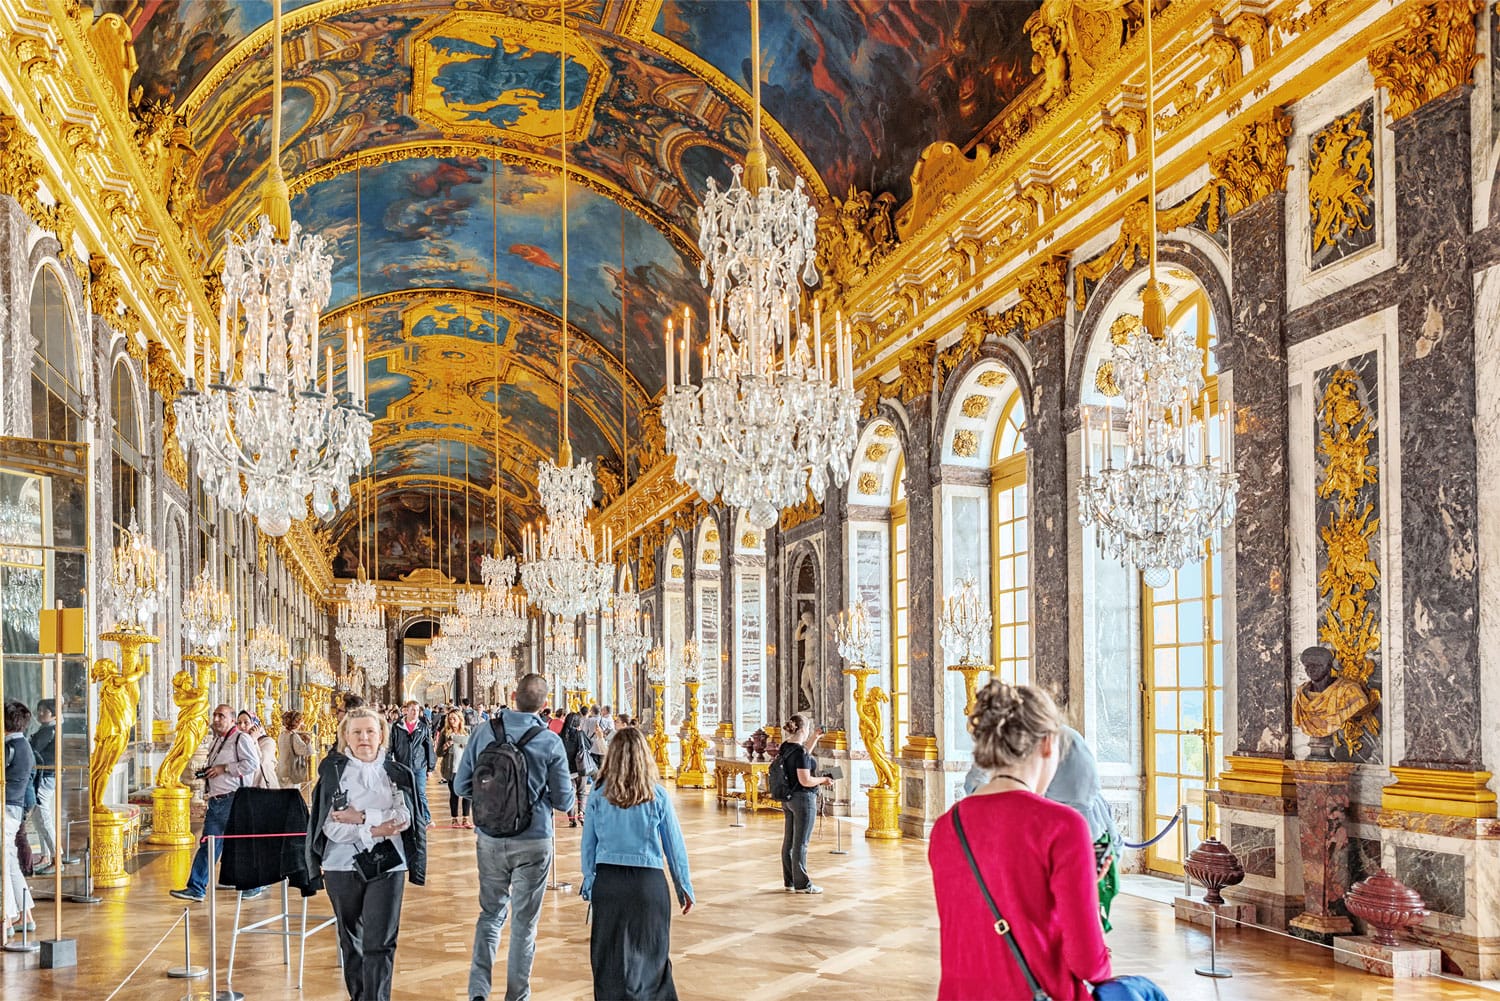 Το Hall of Mirrors (Galerie des Glaces) - είναι το πιο διάσημο δωμάτιο του παλατιού. Chateau de Versailles στο Παρίσι, Γαλλία